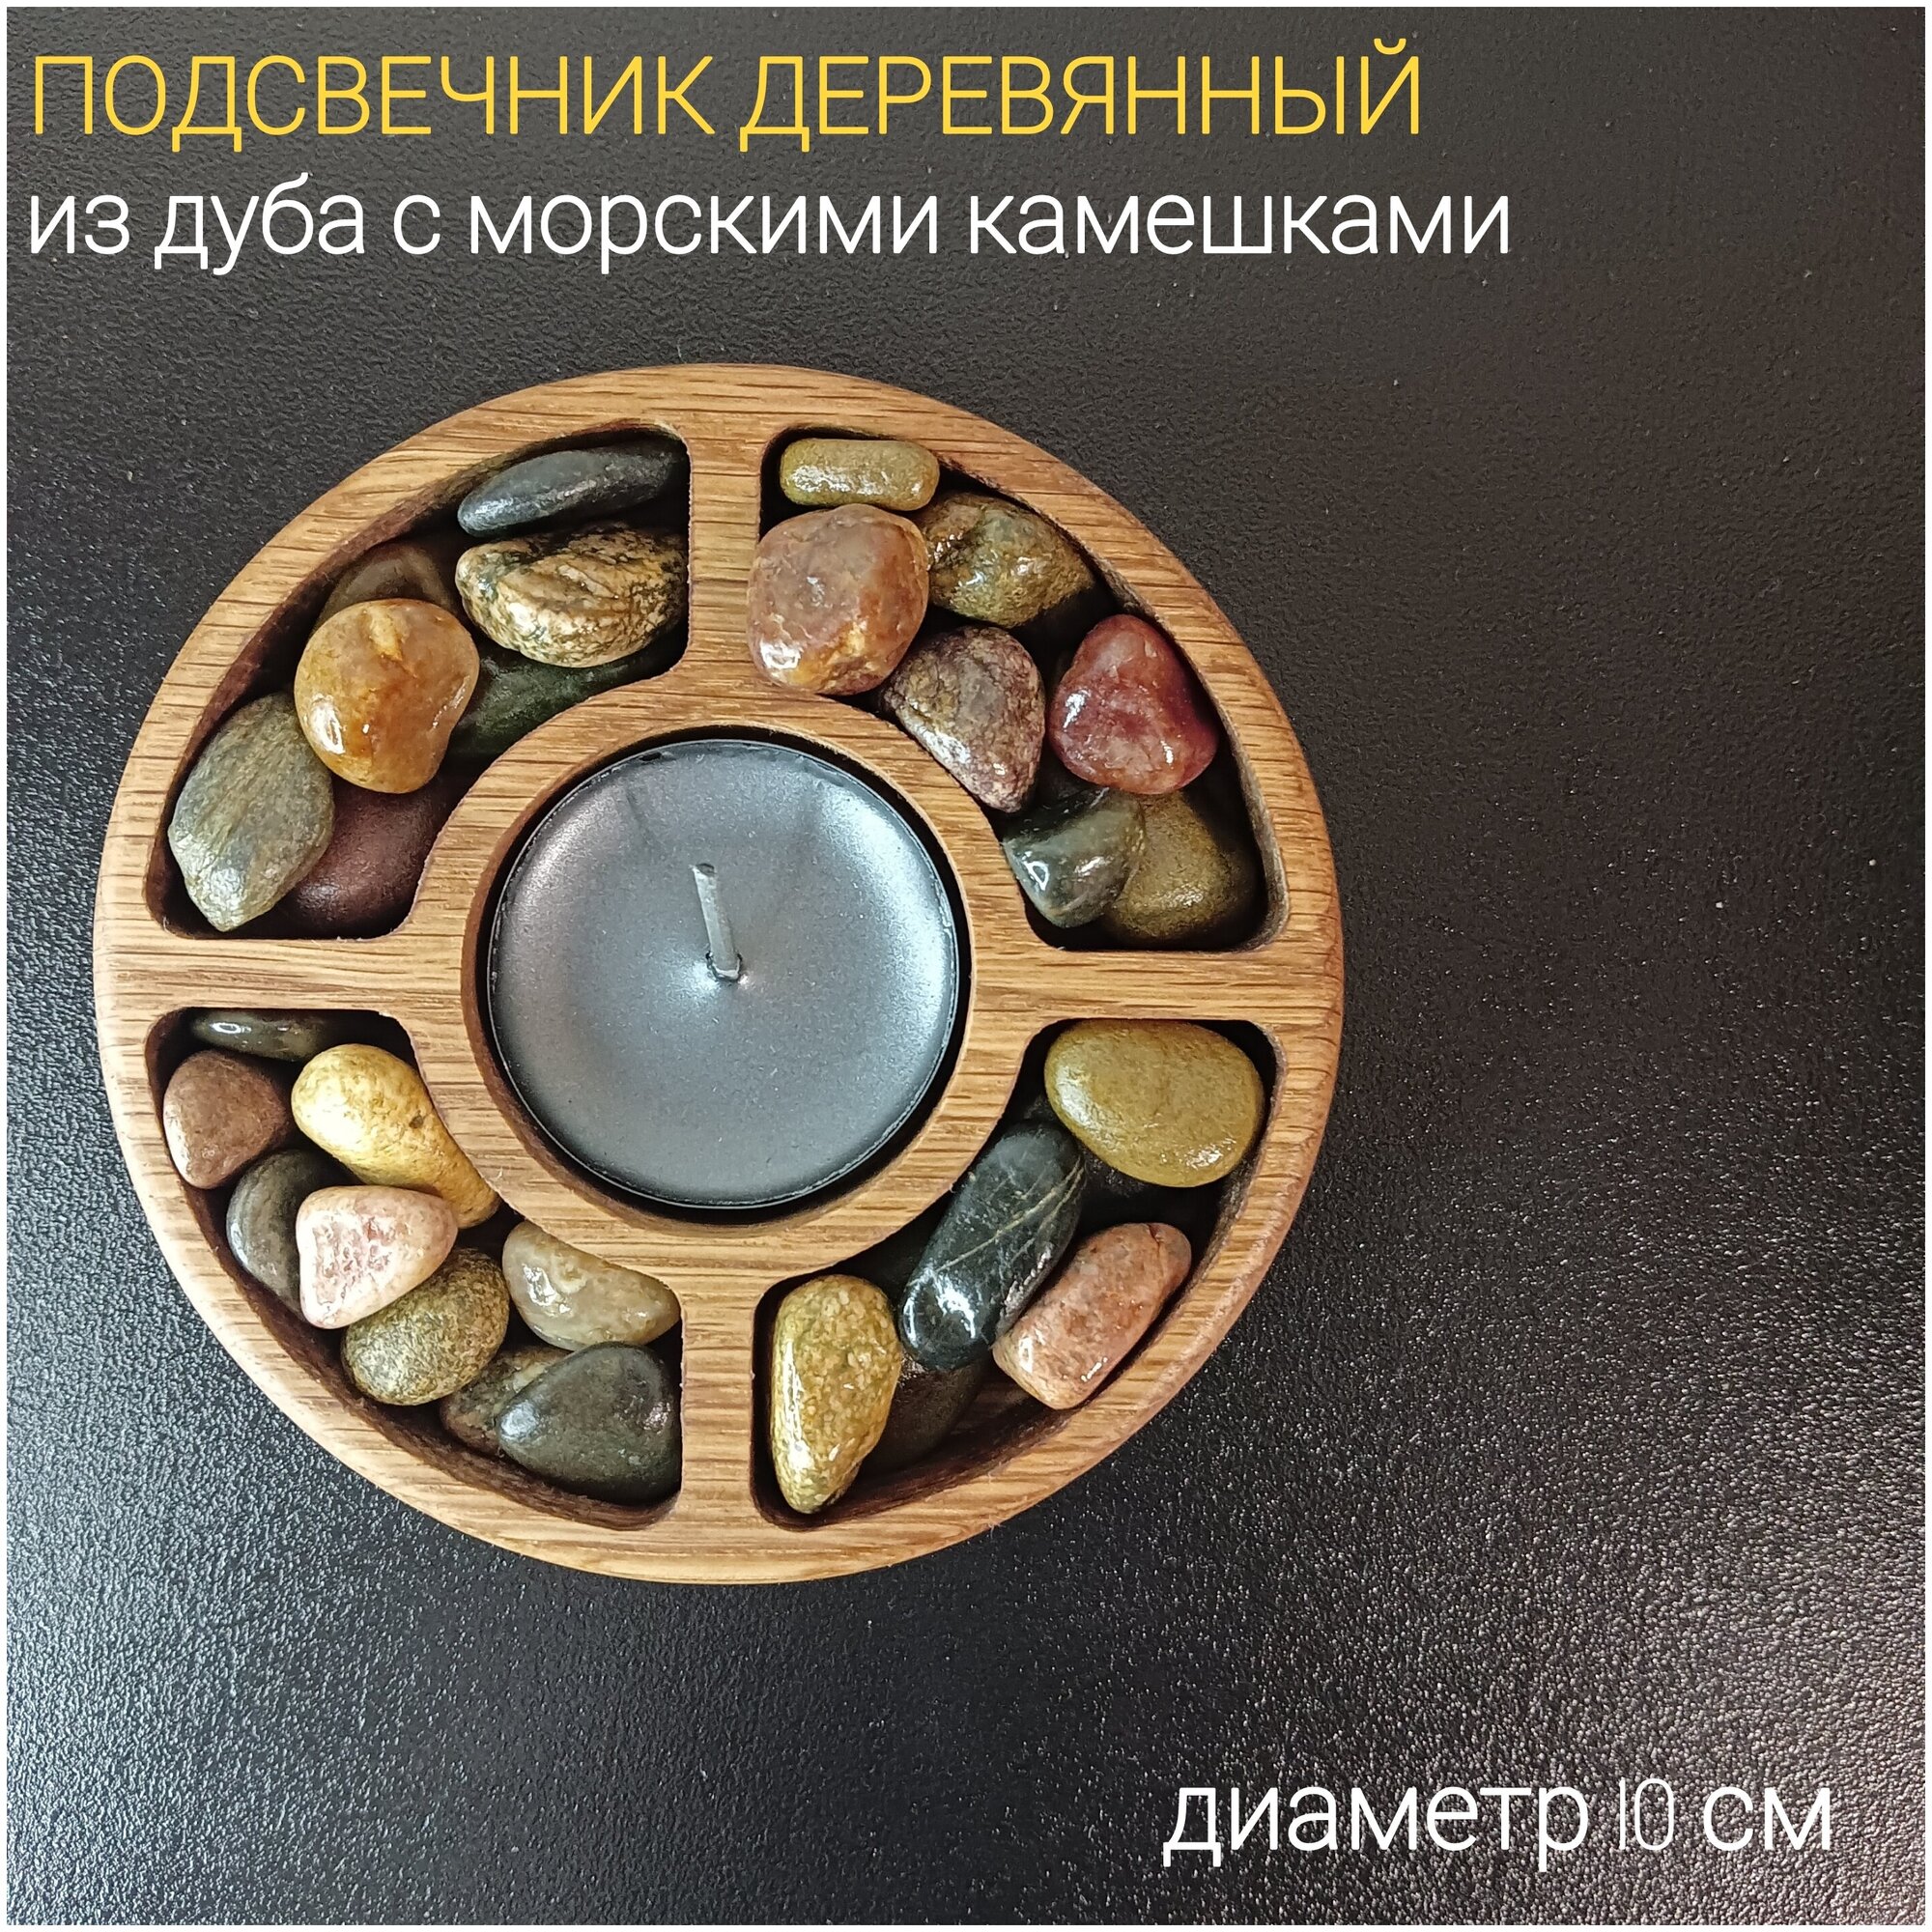 Подсвечник деревянный с морскими камешками для чайных свечей, из дуба (набор), круглый, диаметр 10 см (подарок)